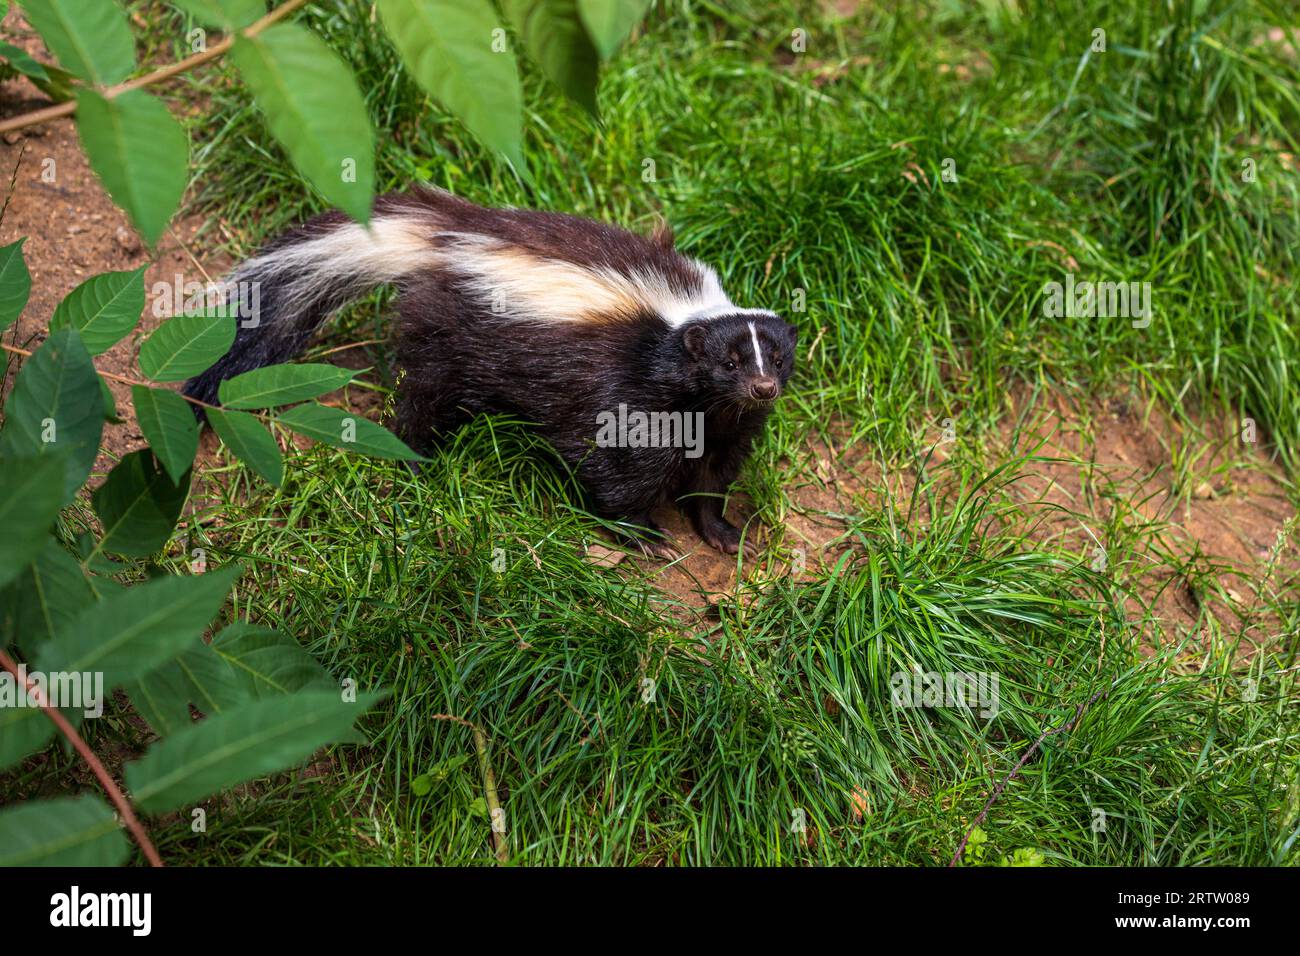 skunk rayé, Mephitis Mephitis, dans la forêt d'été Banque D'Images